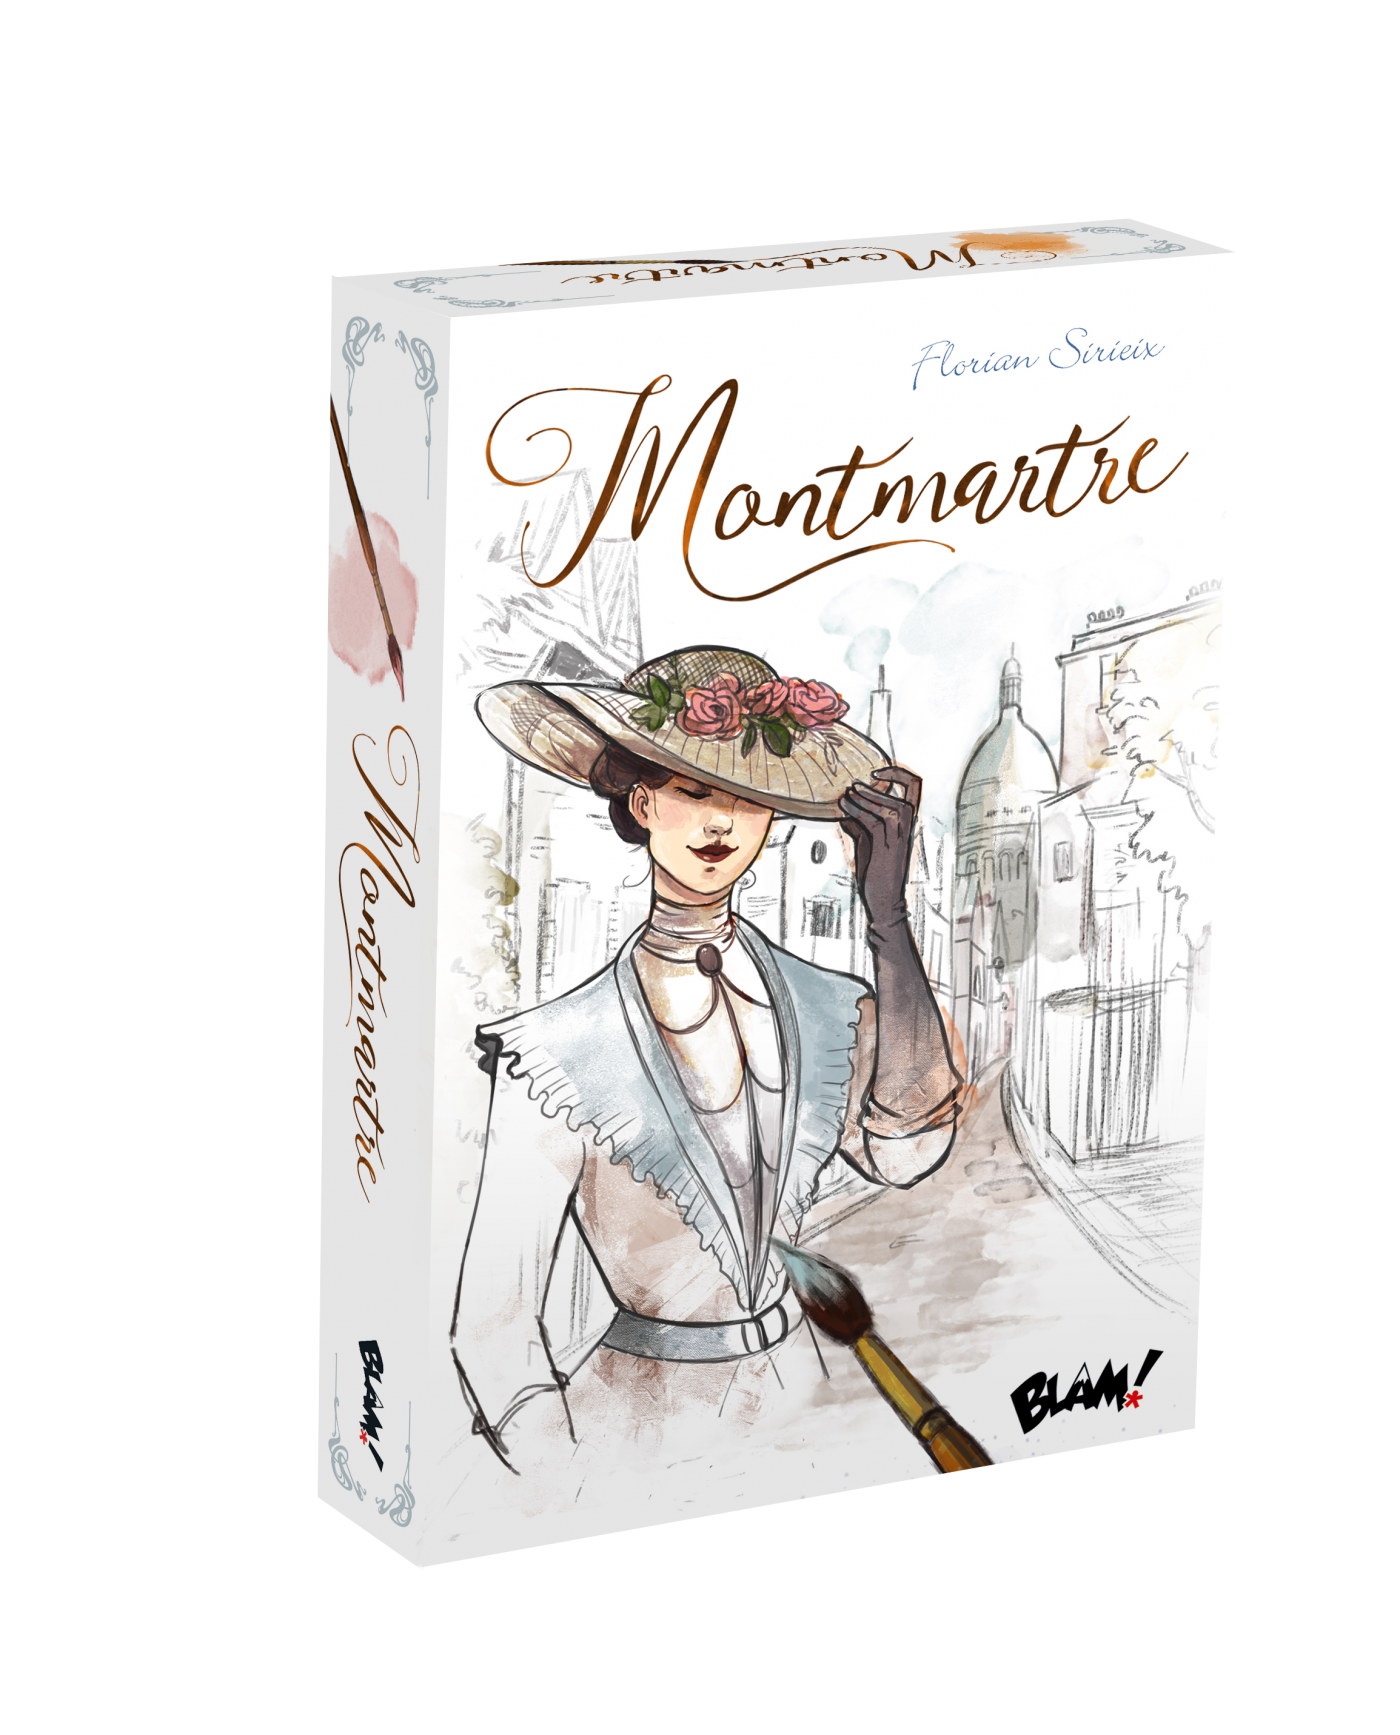 Preview : Montmartre, à vos pinceaux avec Blam !